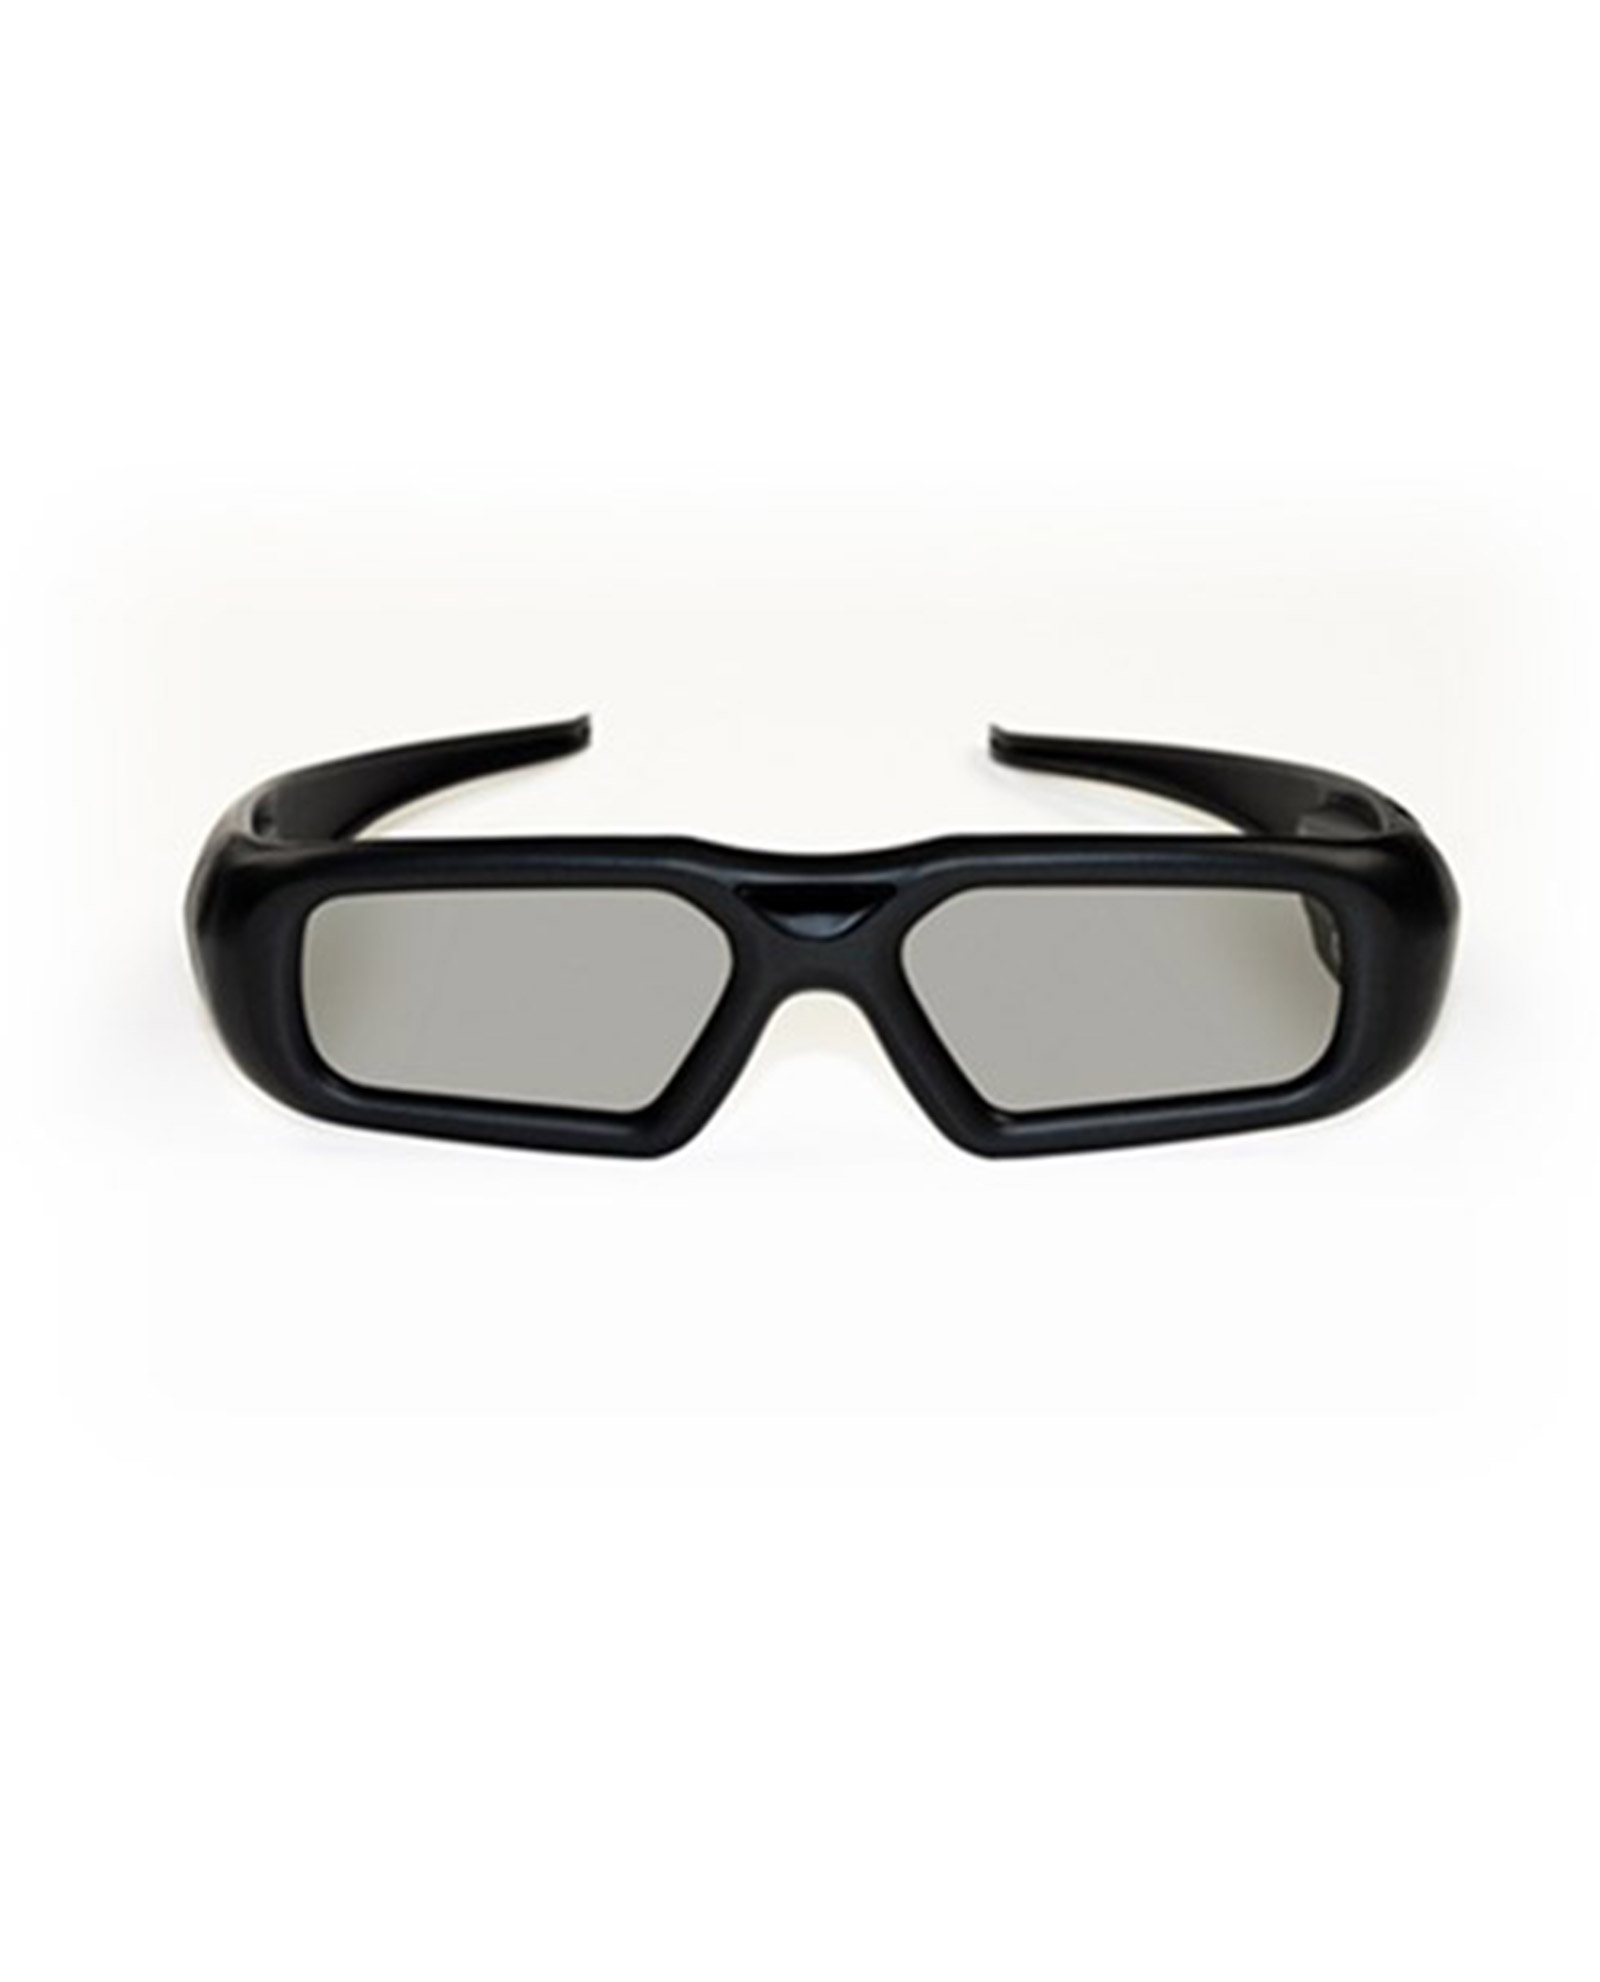 Optoma Zf2300 Glasses